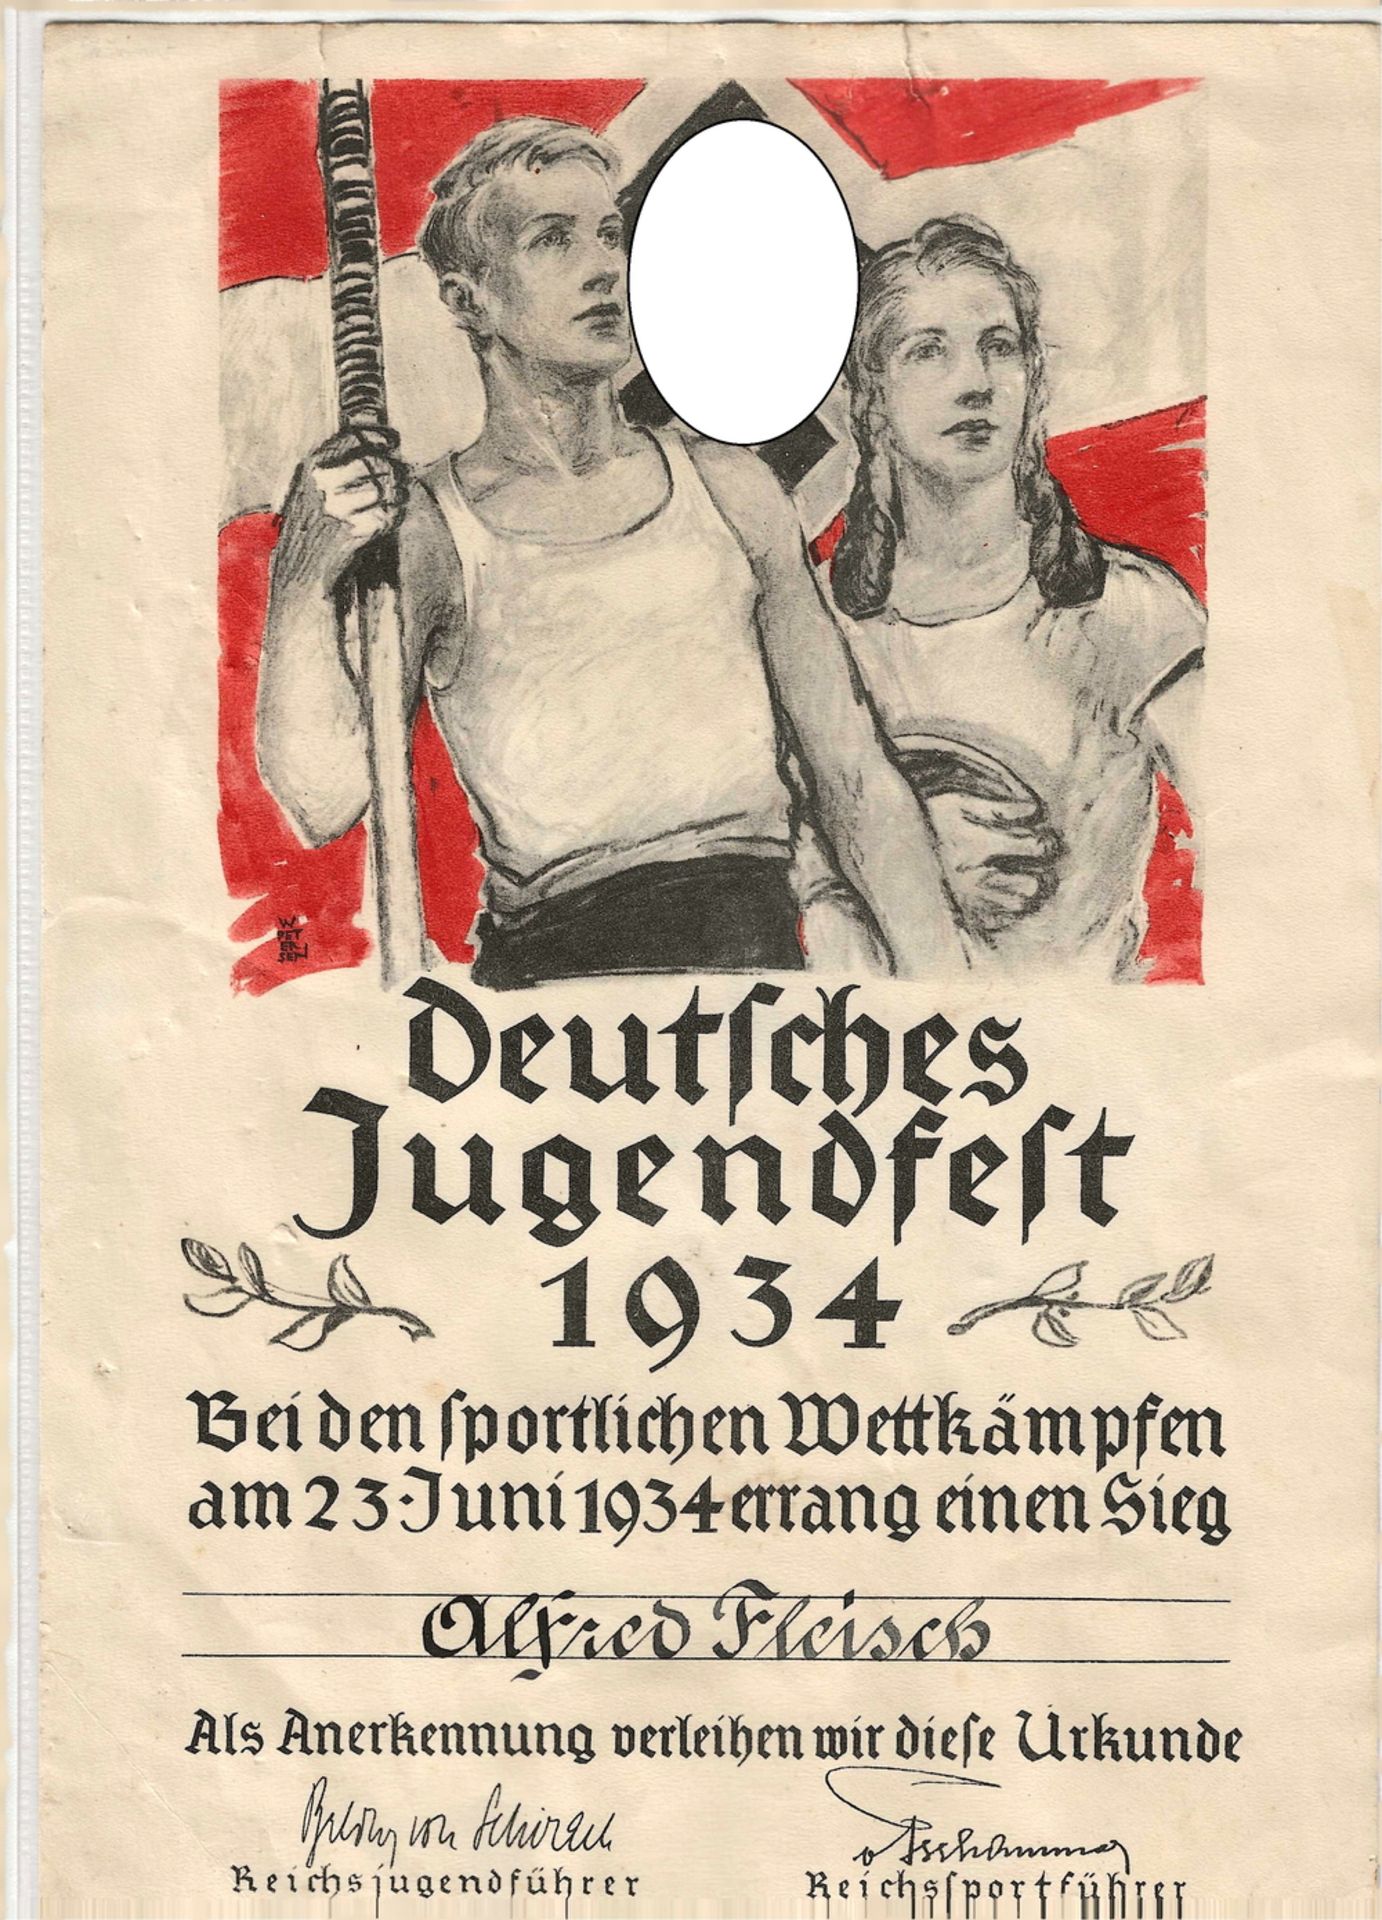 Urkunde zum "Deutschen Jugendfest 1934"